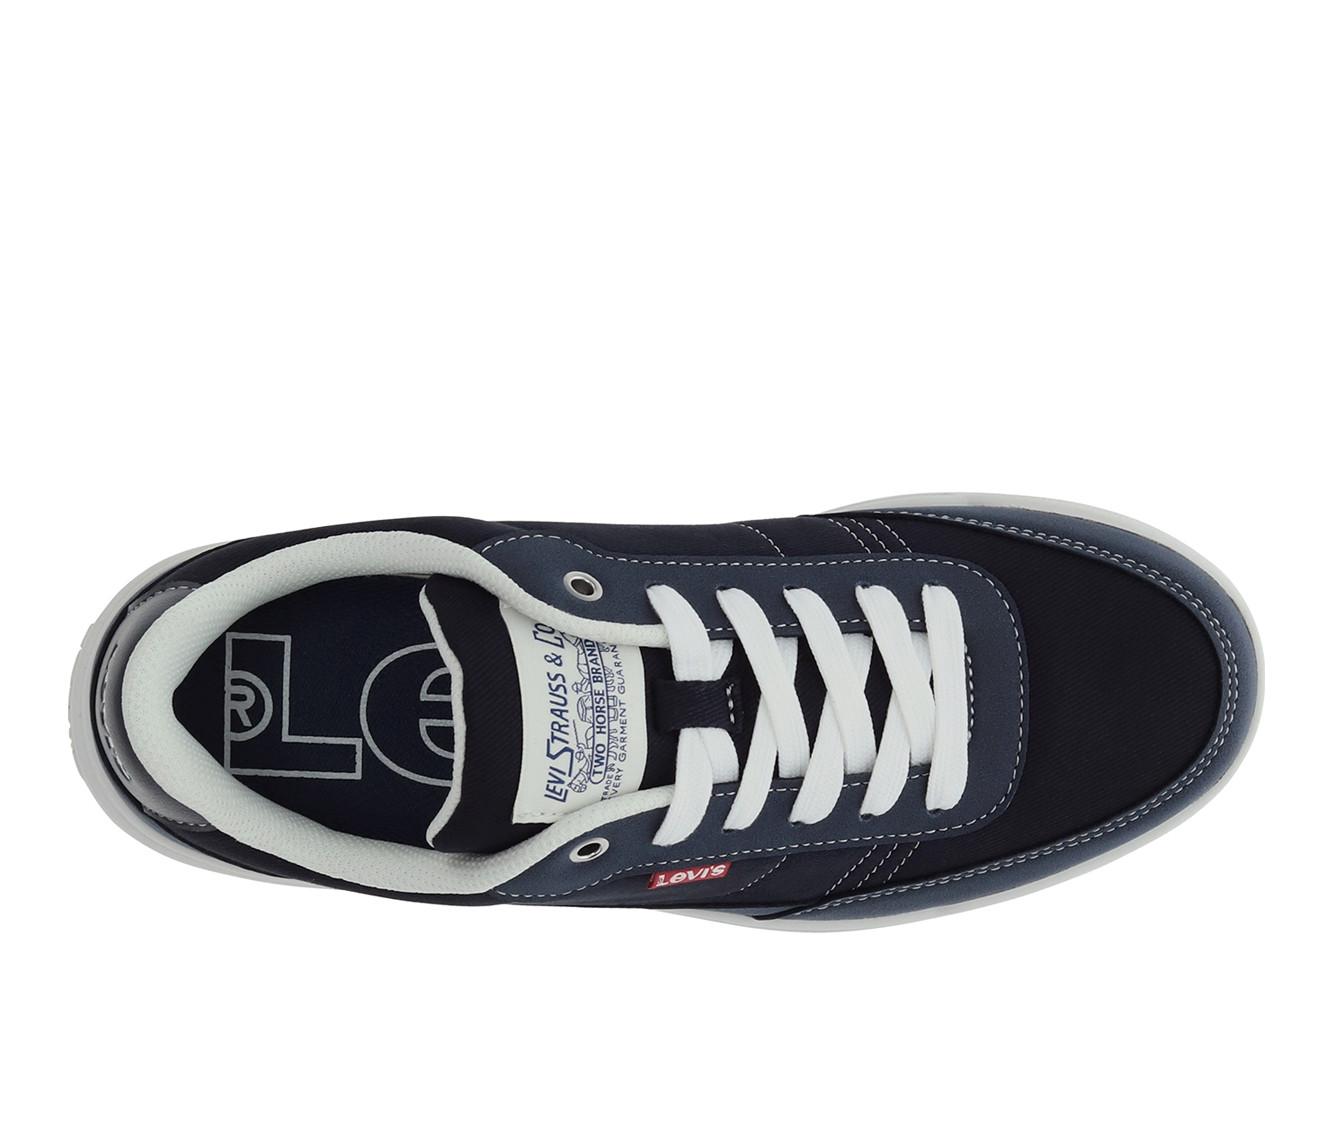 Men's Levis Aden Casual Sneakers